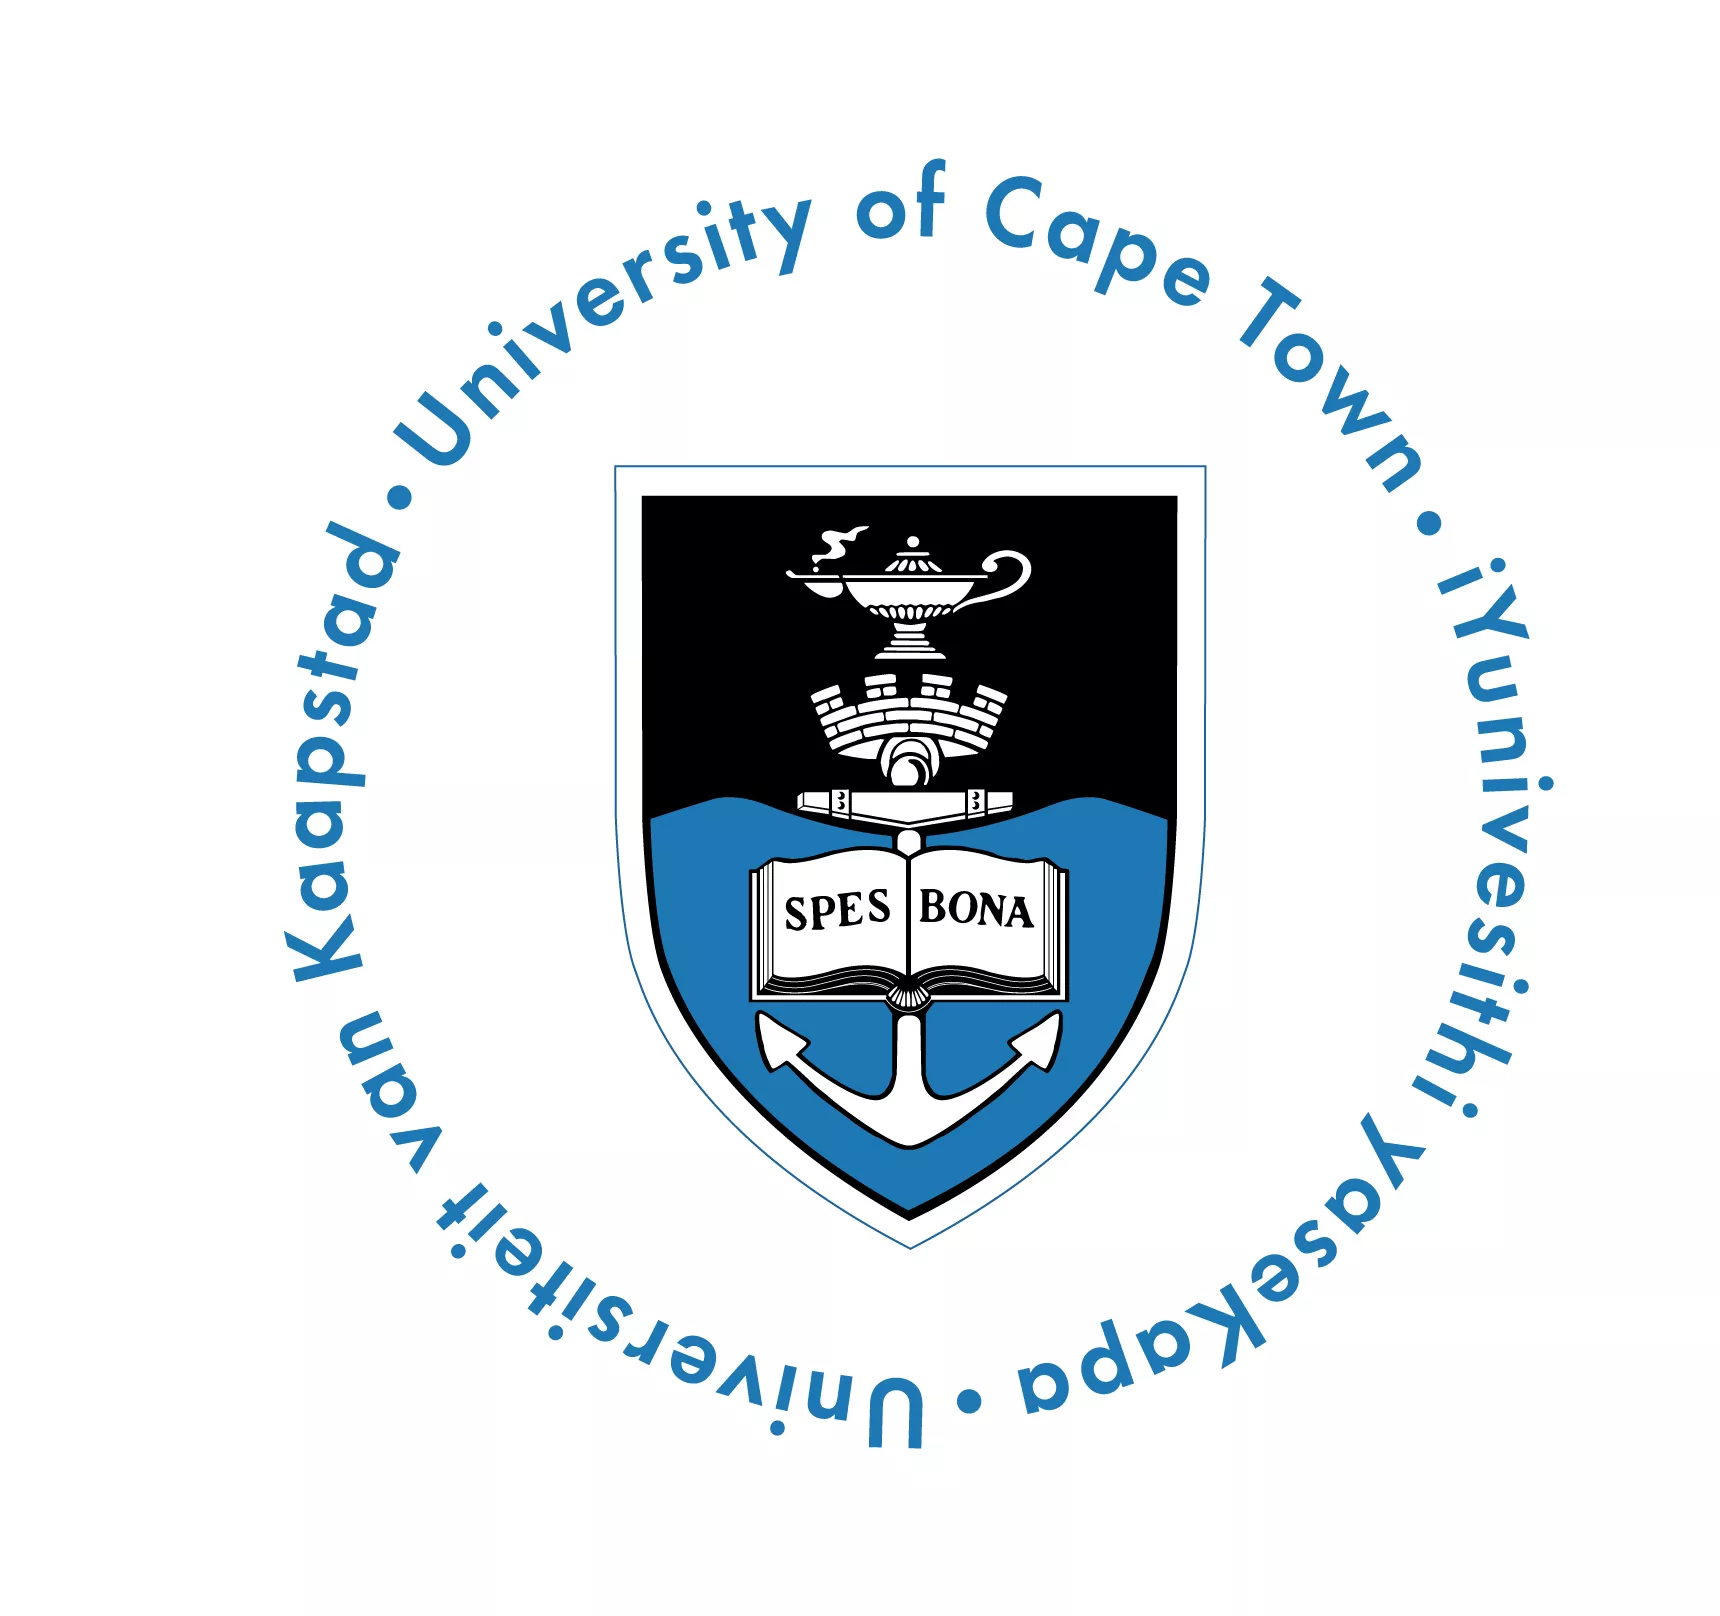 Bourse UCT HPI-CS4A de Doctorat en informatique pour les étudiants africains en Afrique du Sud, 2018